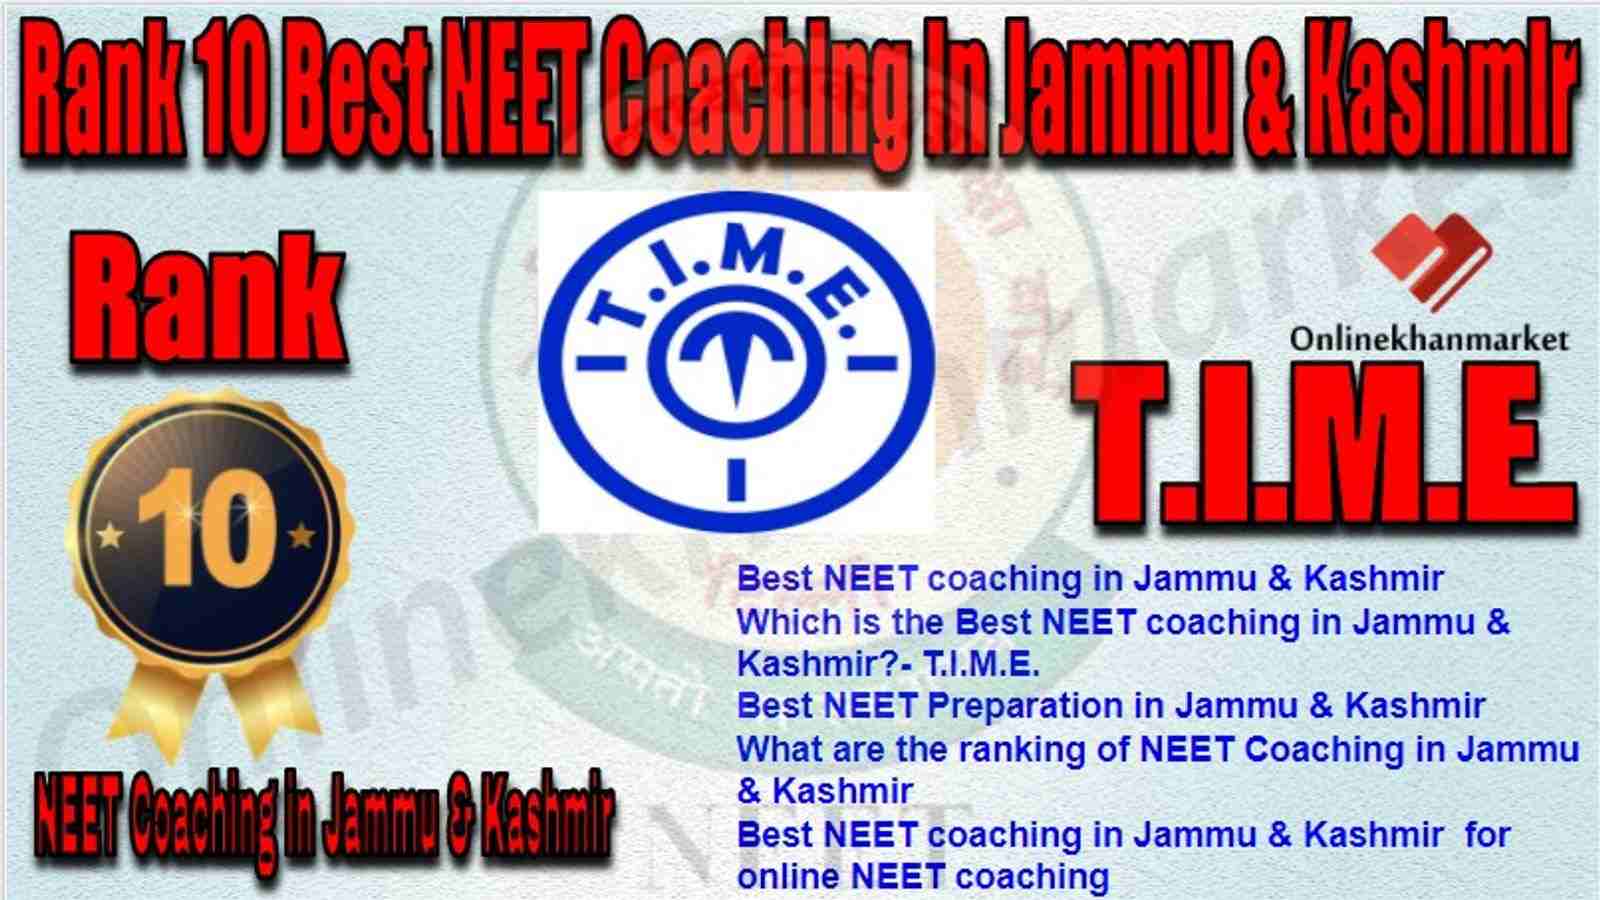 Rank 10 Best NEET Coaching in jammu &kashmir